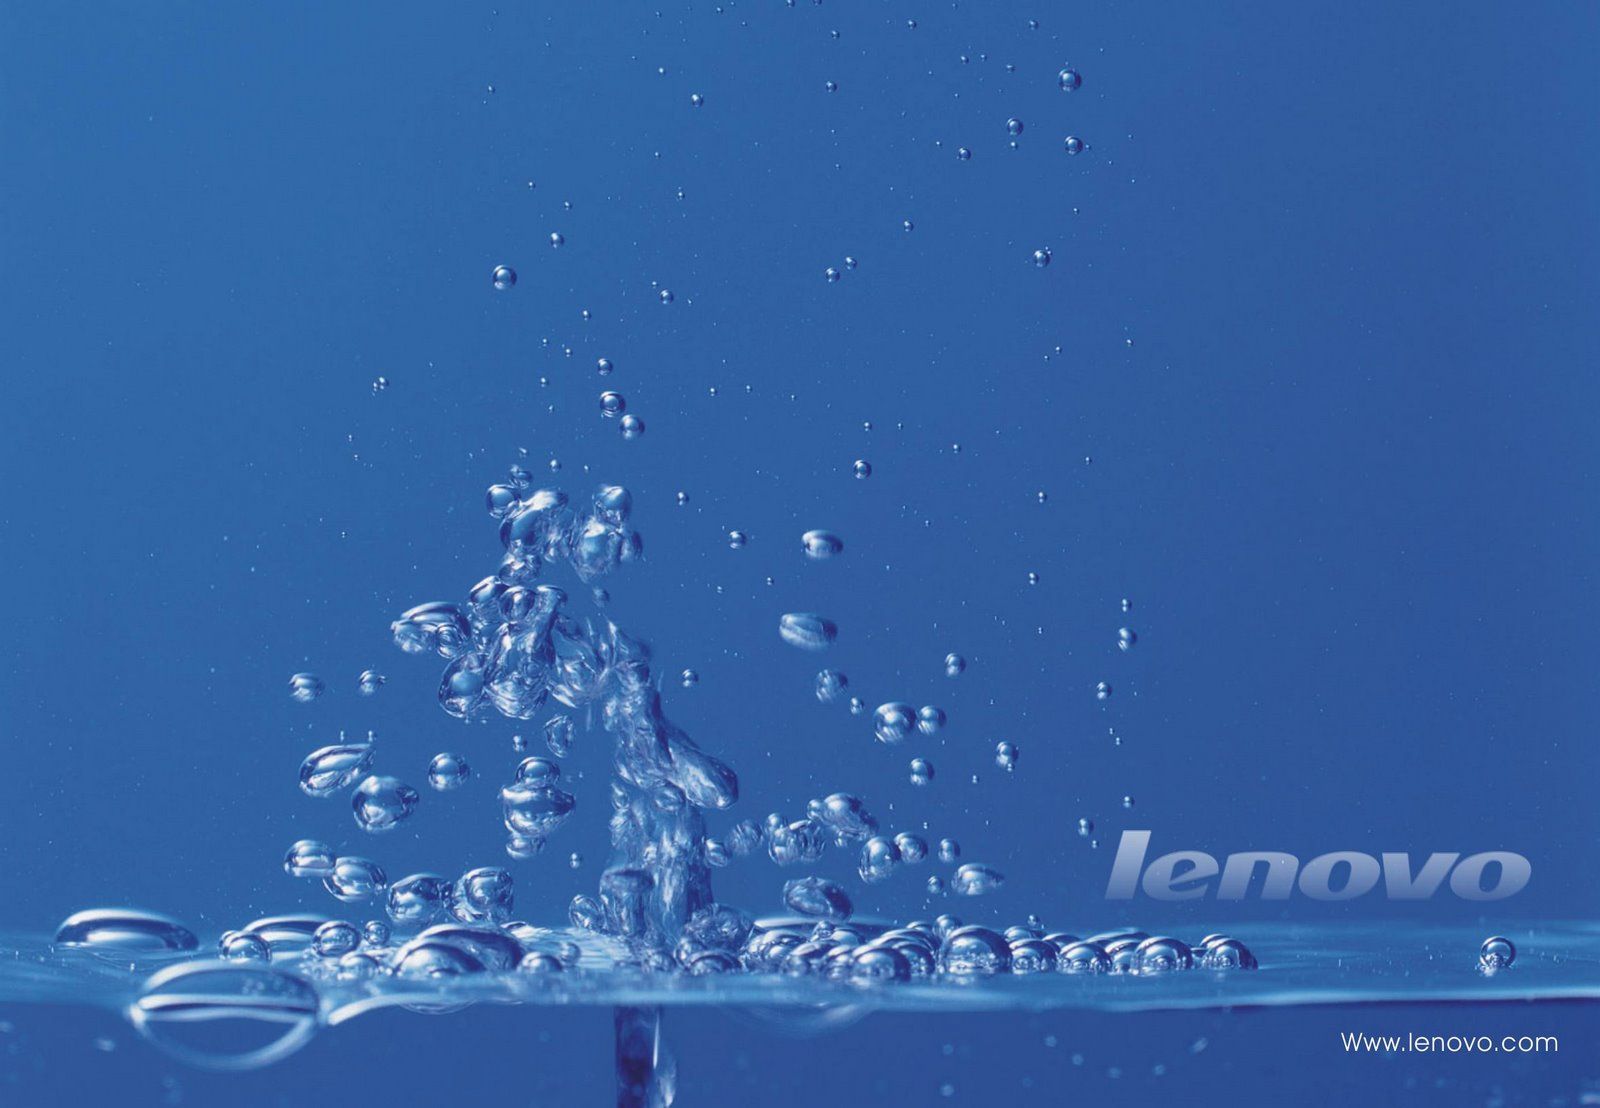 lenovo k6 power fondo de pantalla,agua,azul,cielo,atmósfera,líquido